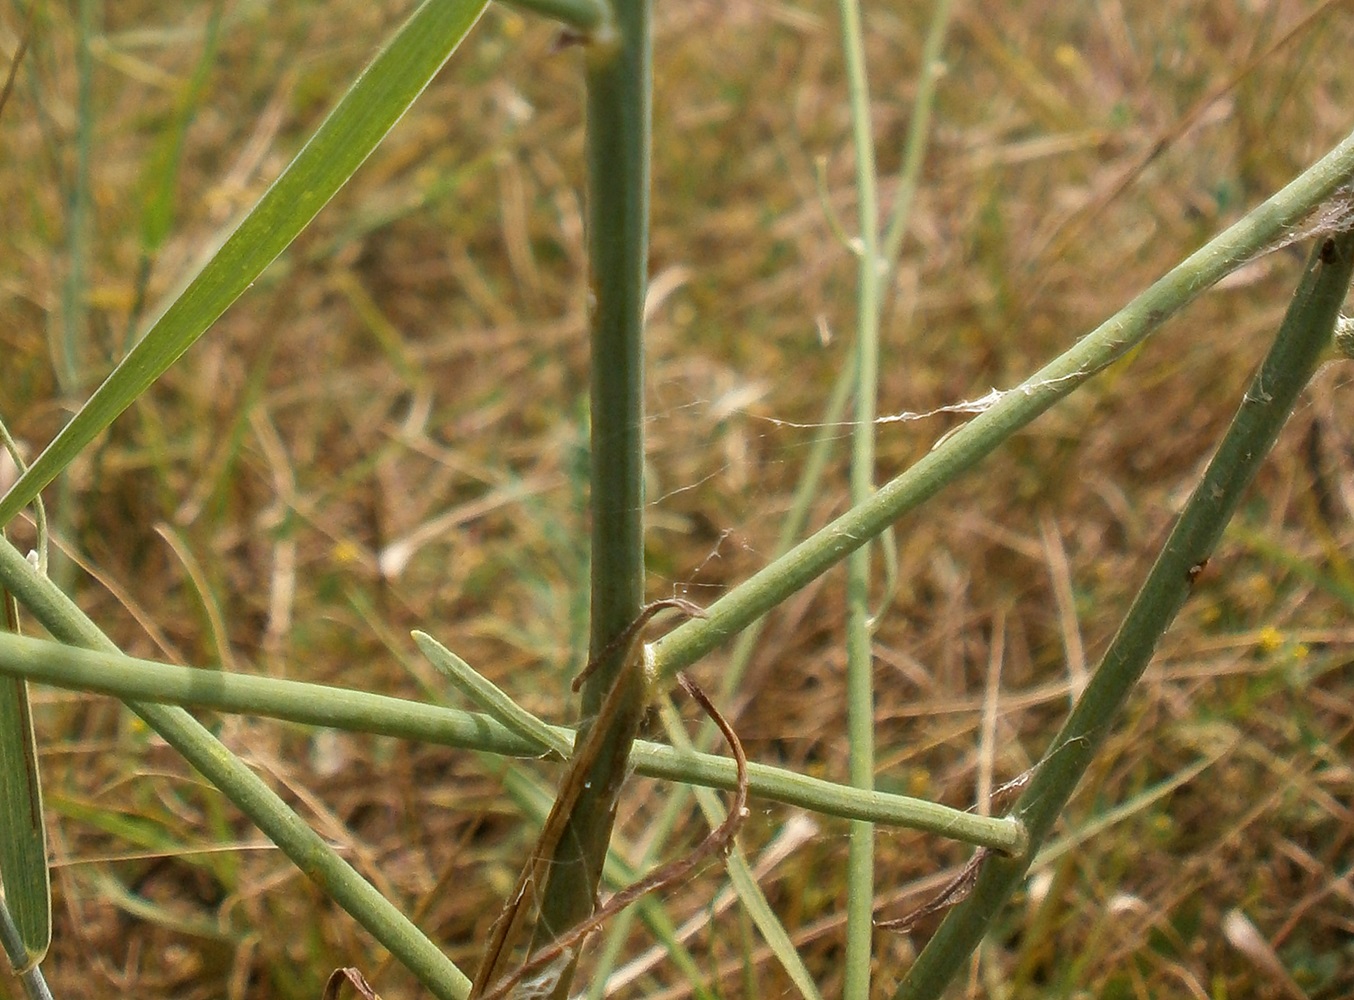 Image of genus Chondrilla specimen.